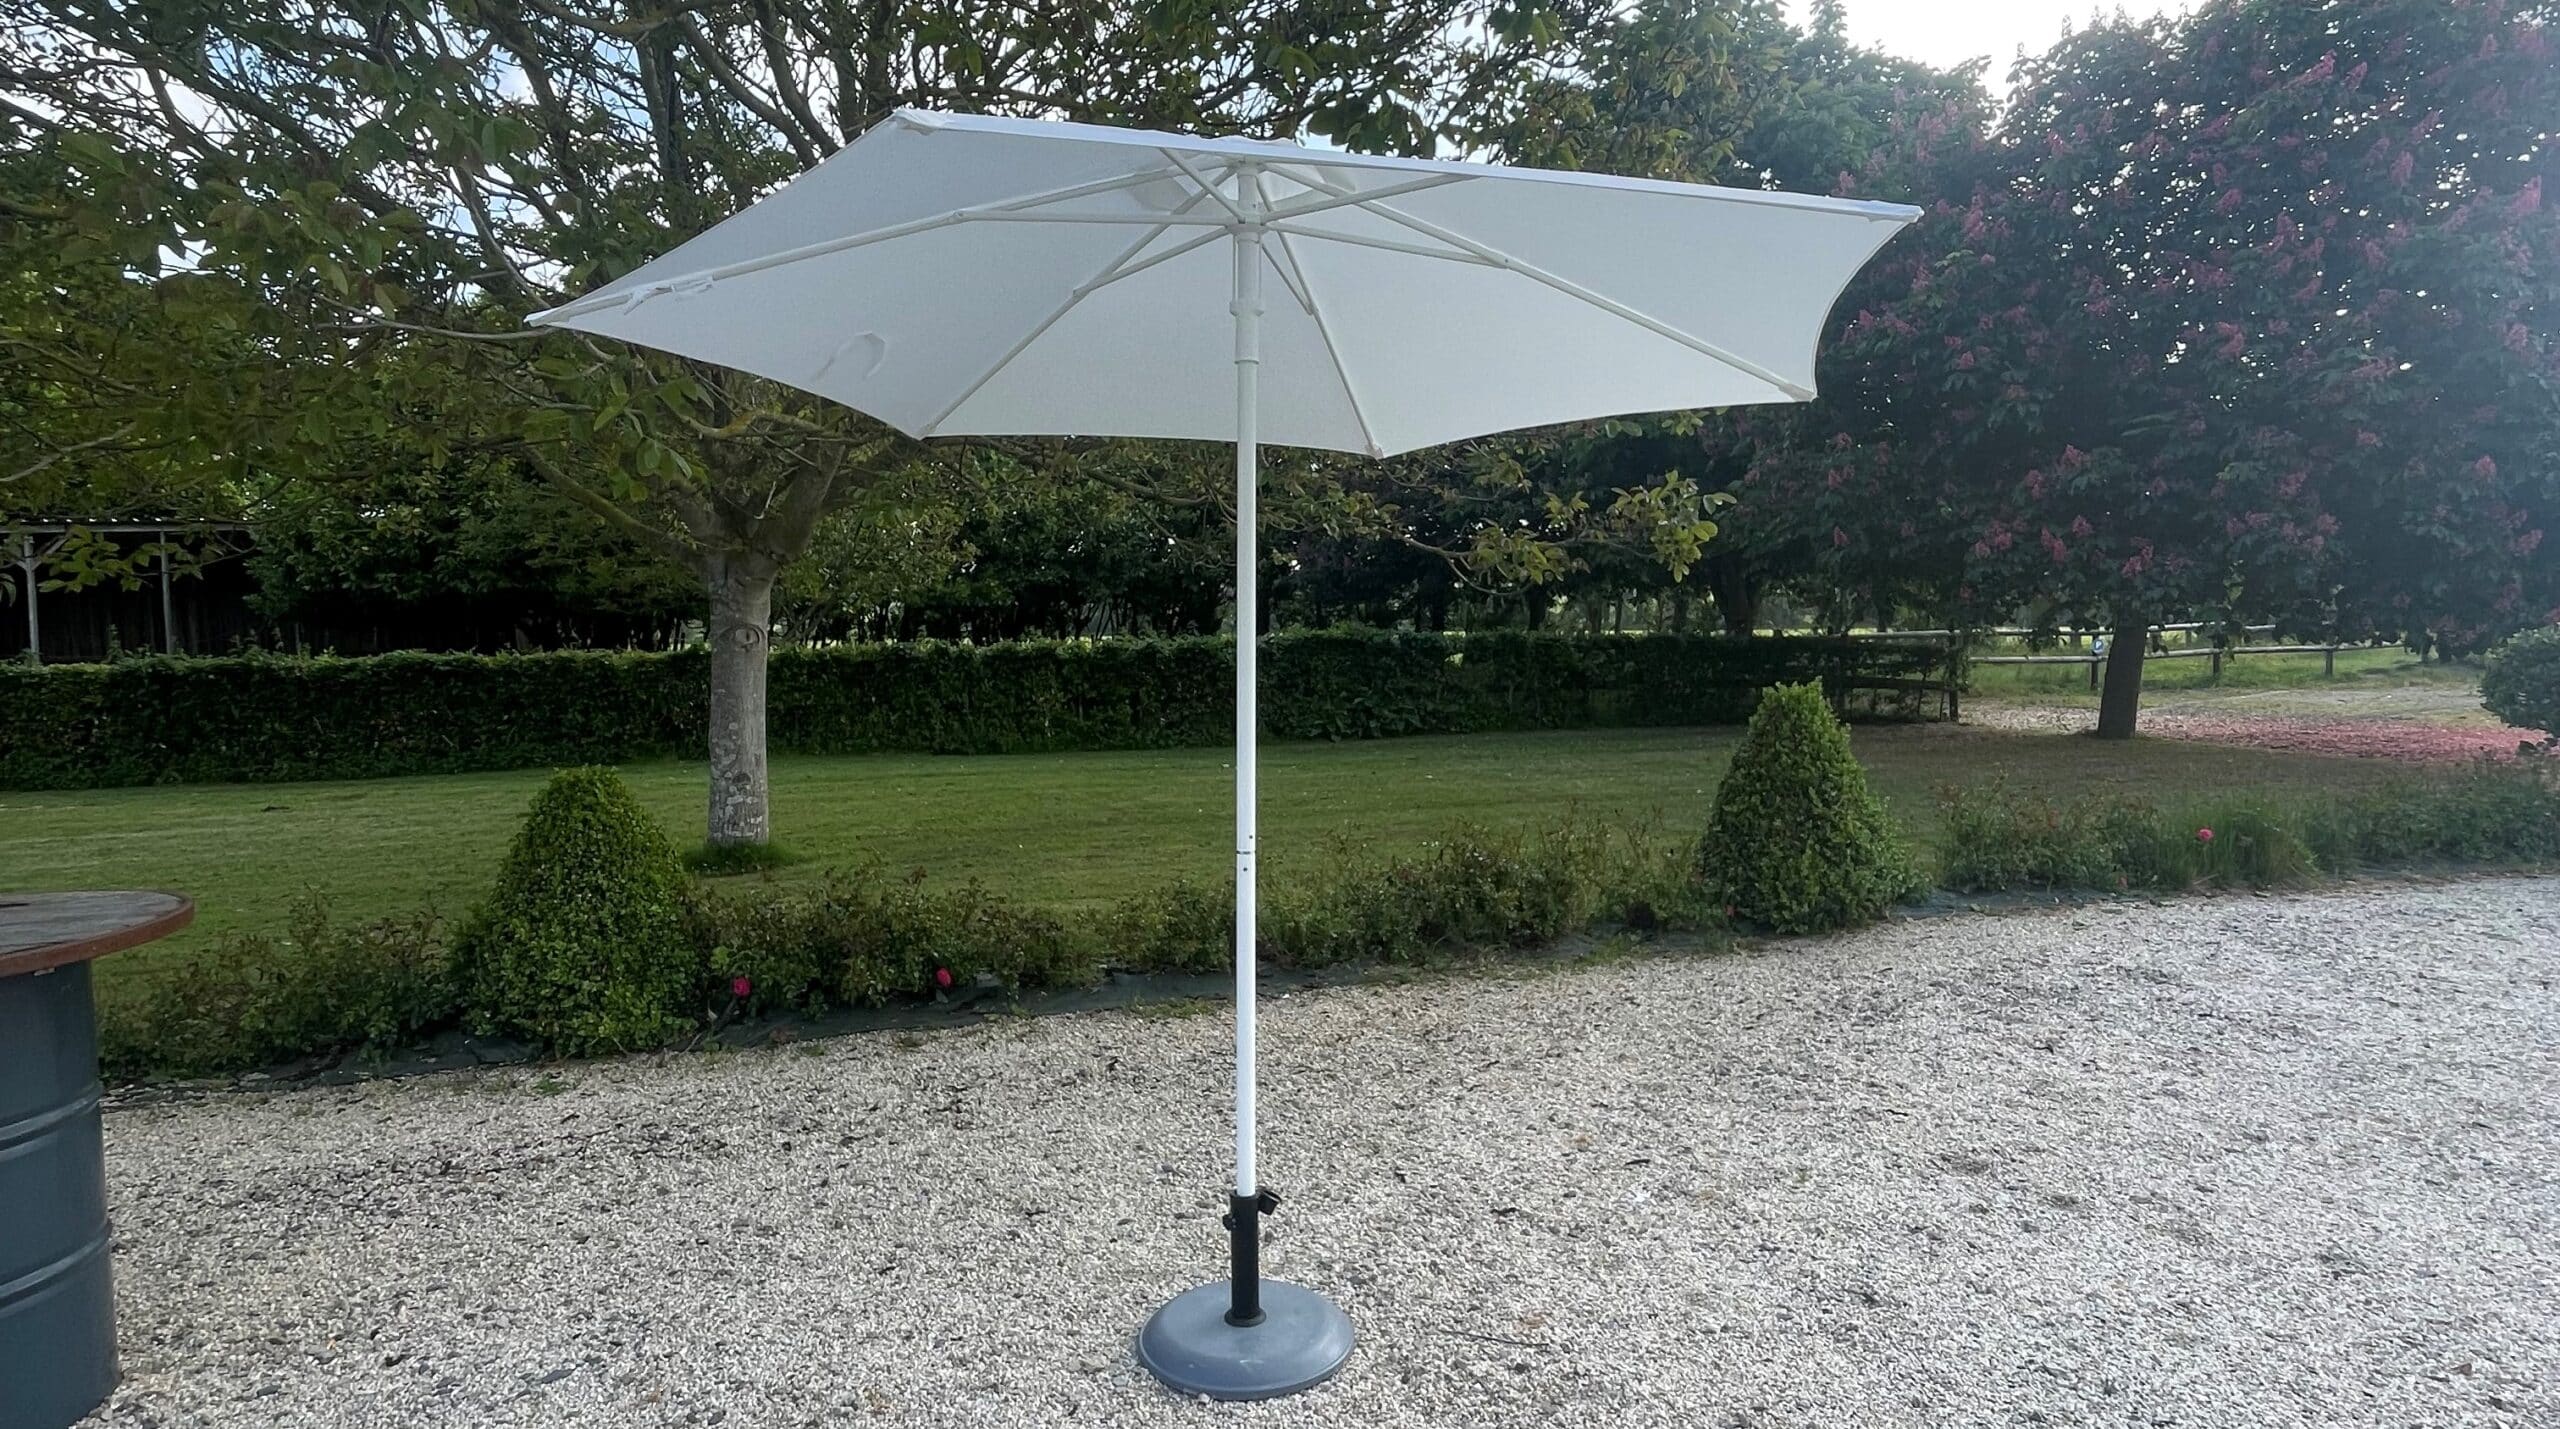 Louez nos parasols pour vos événements en plein air pour profiter du soleil en toute sérénité ! 